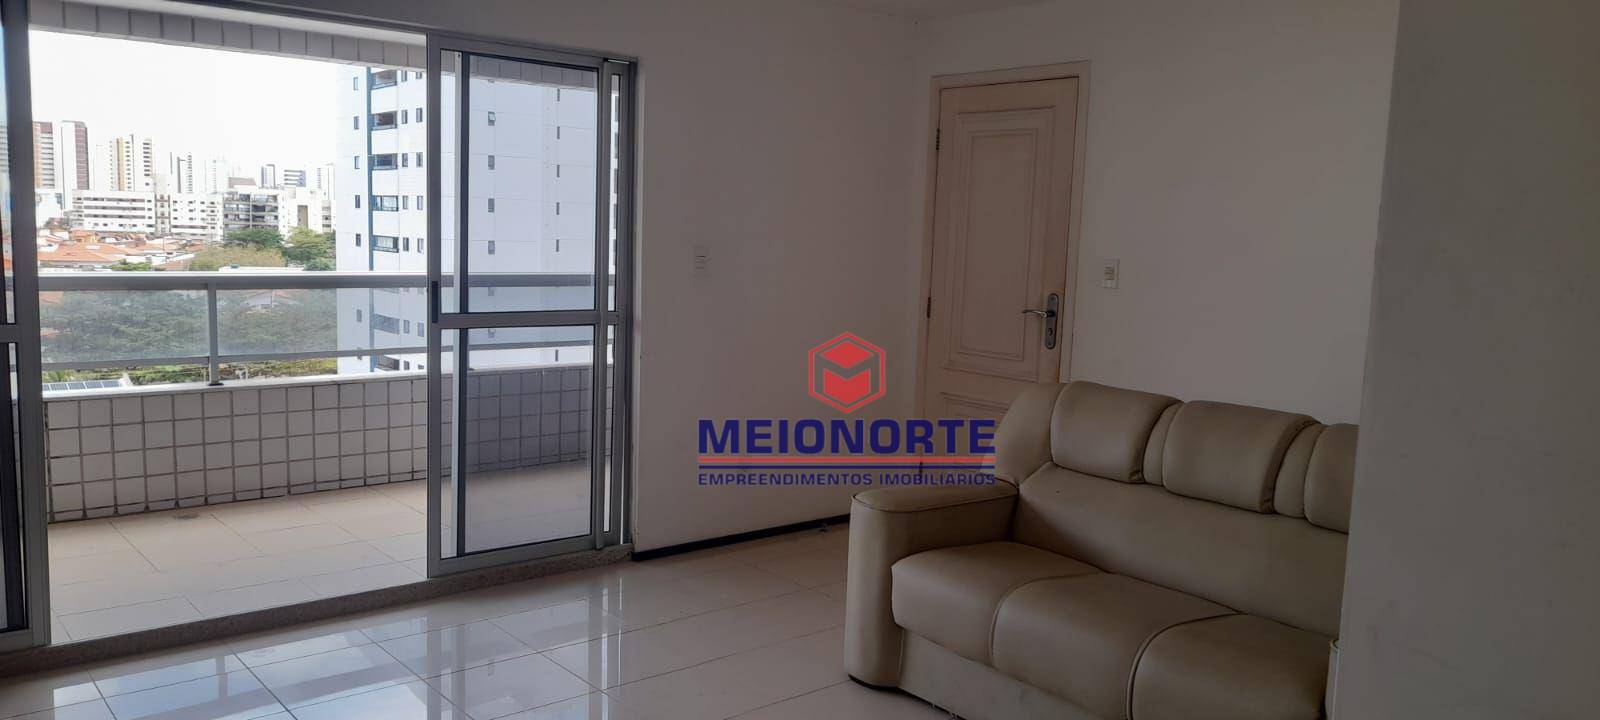 Apartamento, 4 quartos, 170 m² - Foto 2